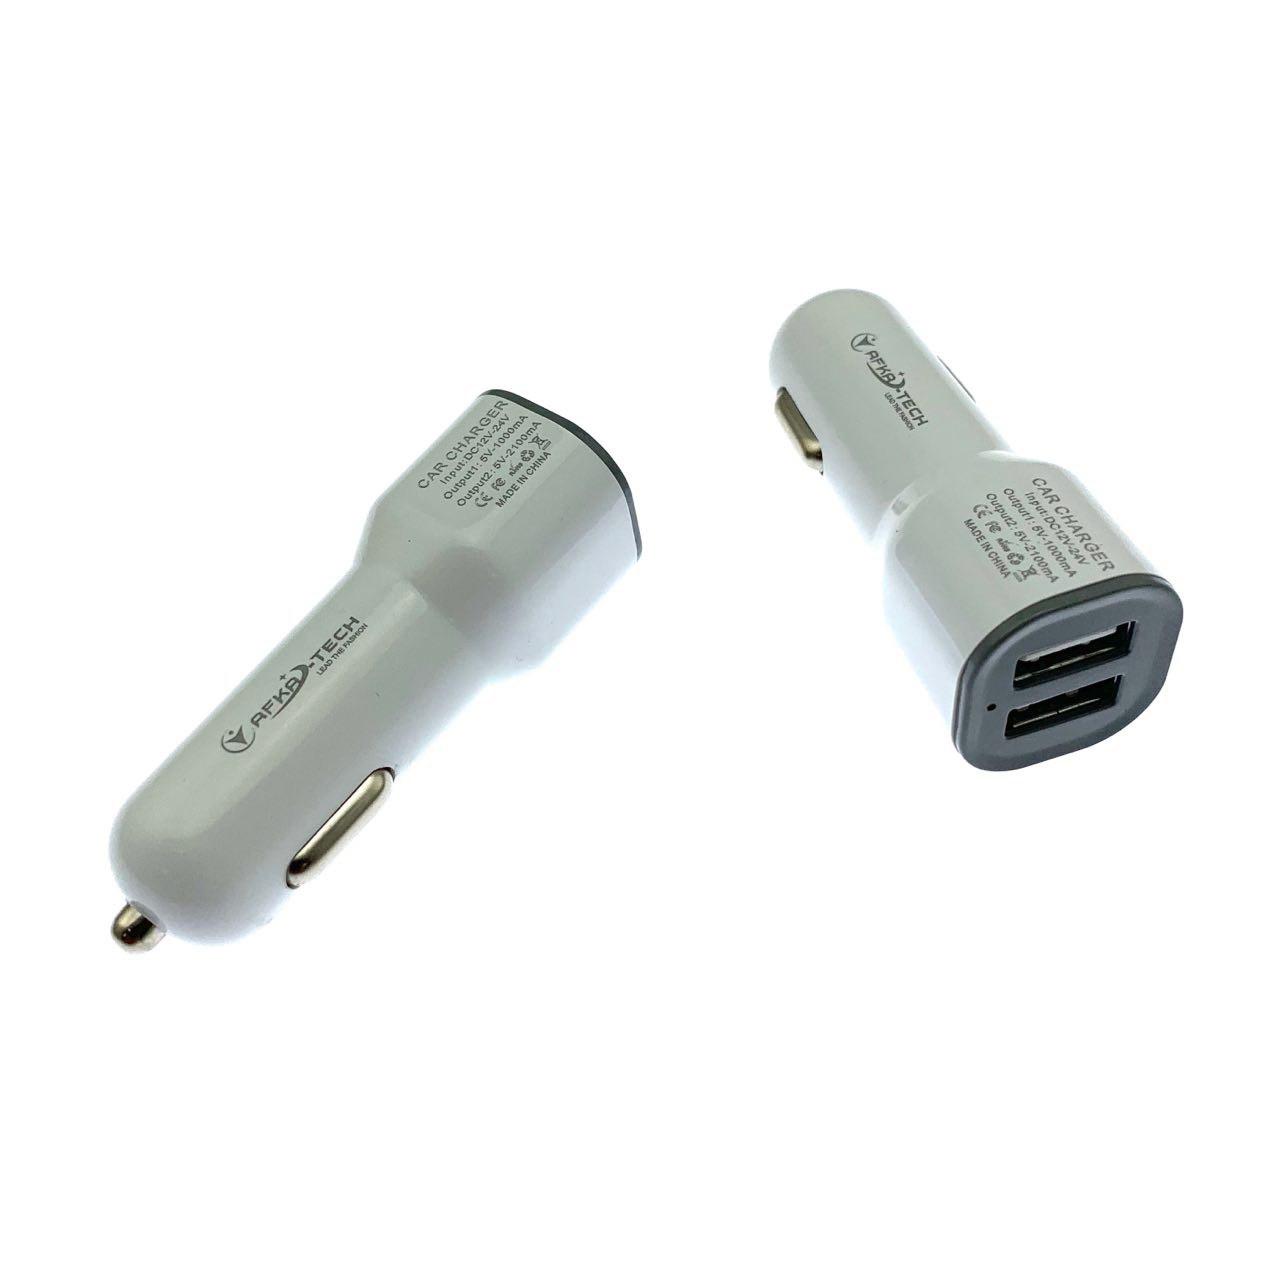 АЗУ (автомобильное зарядное устройство) AFKA-TECH, 2 USB порта, цвет белый.